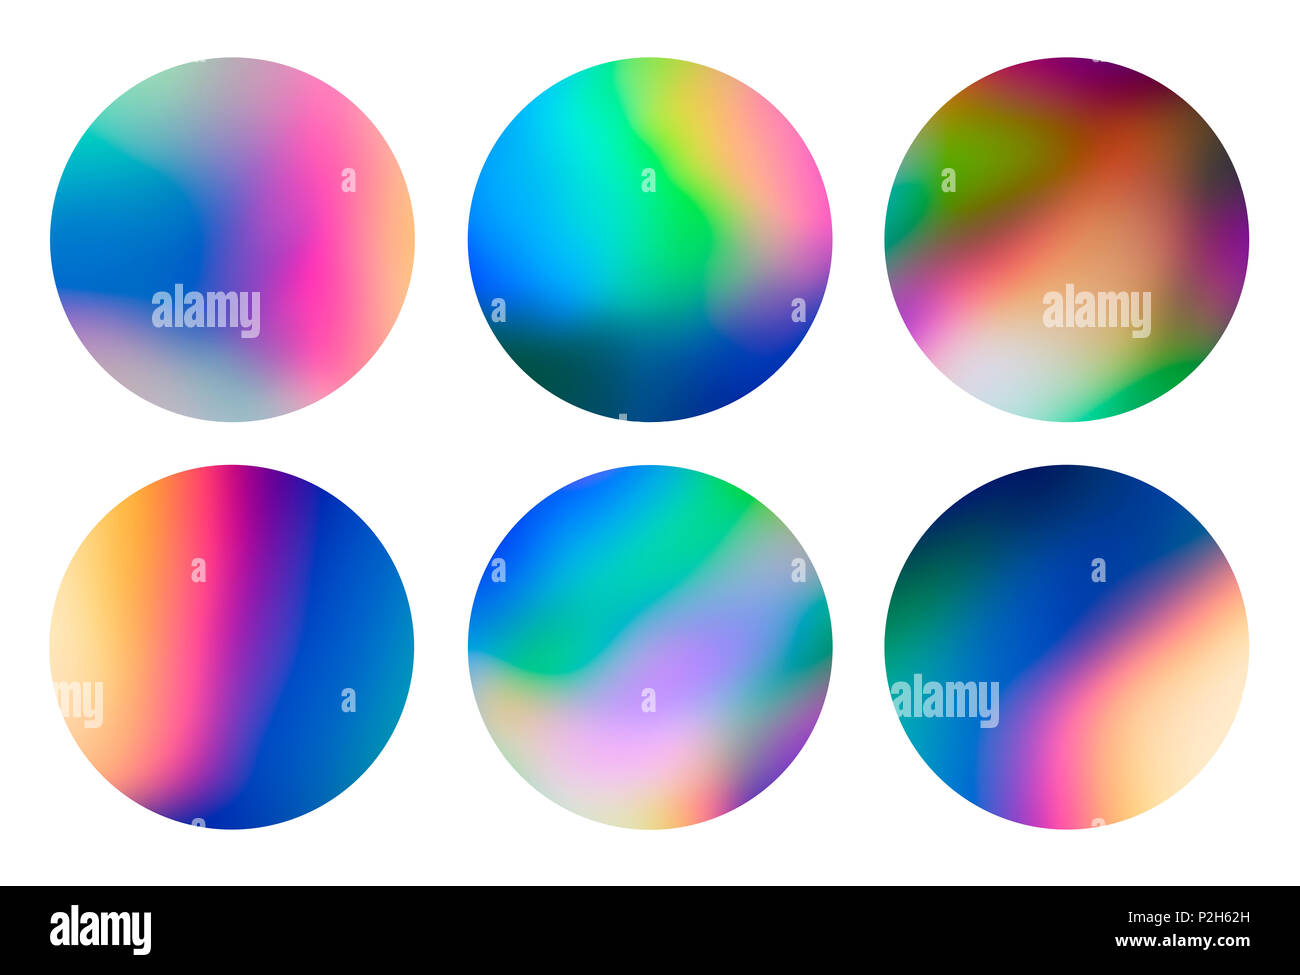 Spettro vaporwave astratta olografica design circolare, trendy sfondo colorato in pastello a colori al neon. Per il design creativo coperchio, CD, poster, prenota Foto Stock